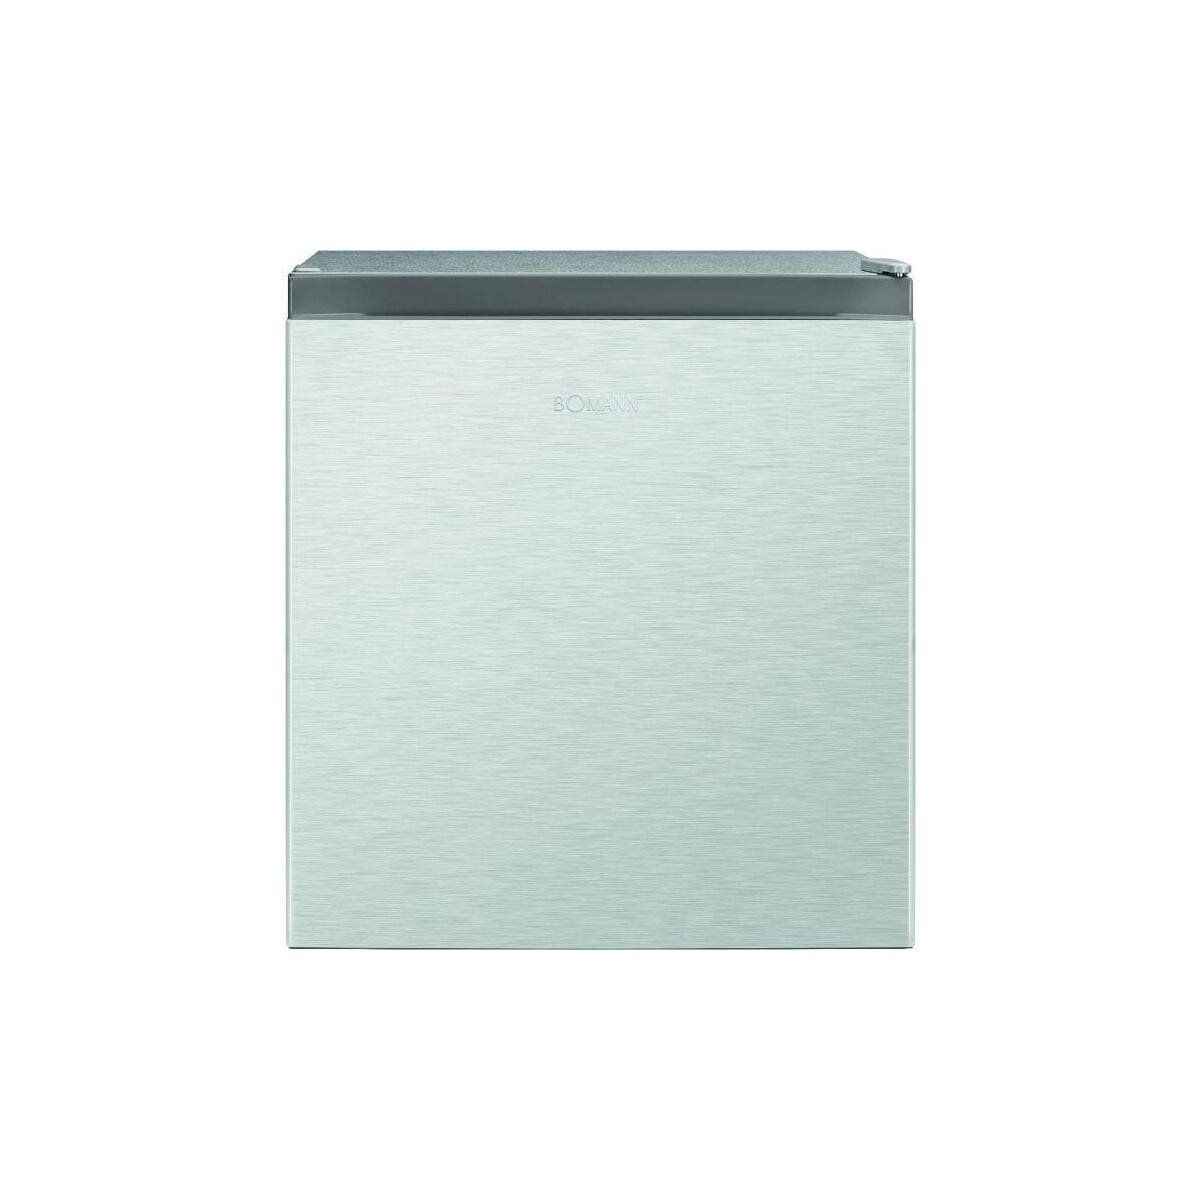 BOMANN KB 7245 Kühlschrank (E, 50 cm Silber) hoch